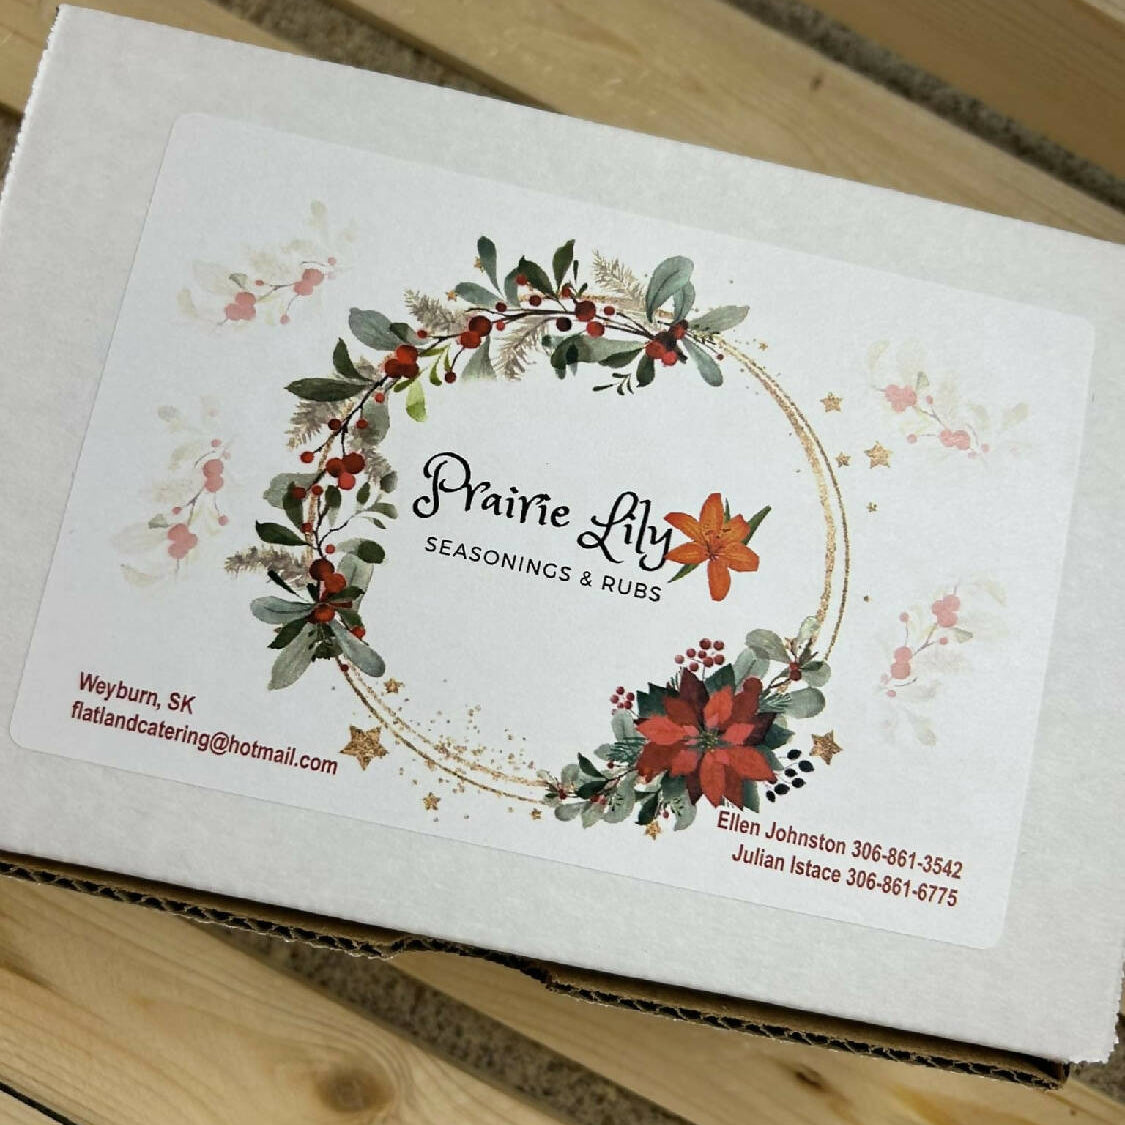 Prairie Lily Gift Box